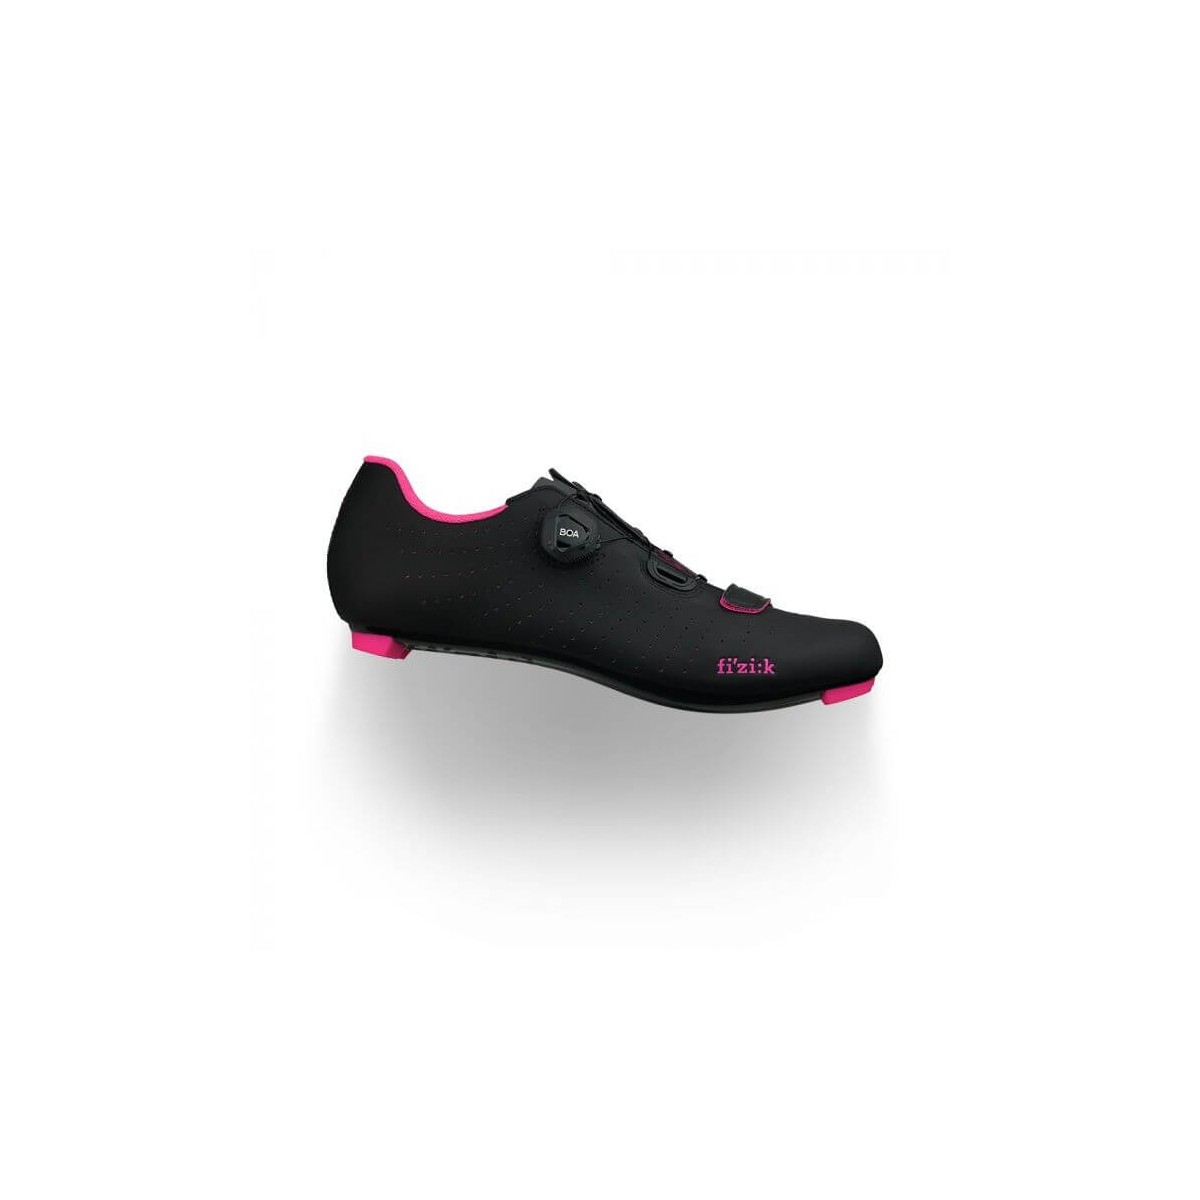 Photos - Cycling Shoes Fizik Tempo R5 Overcurve Shoes Black Pink, Size 37,5 - EUR TPR5OCMI1-1092/ 